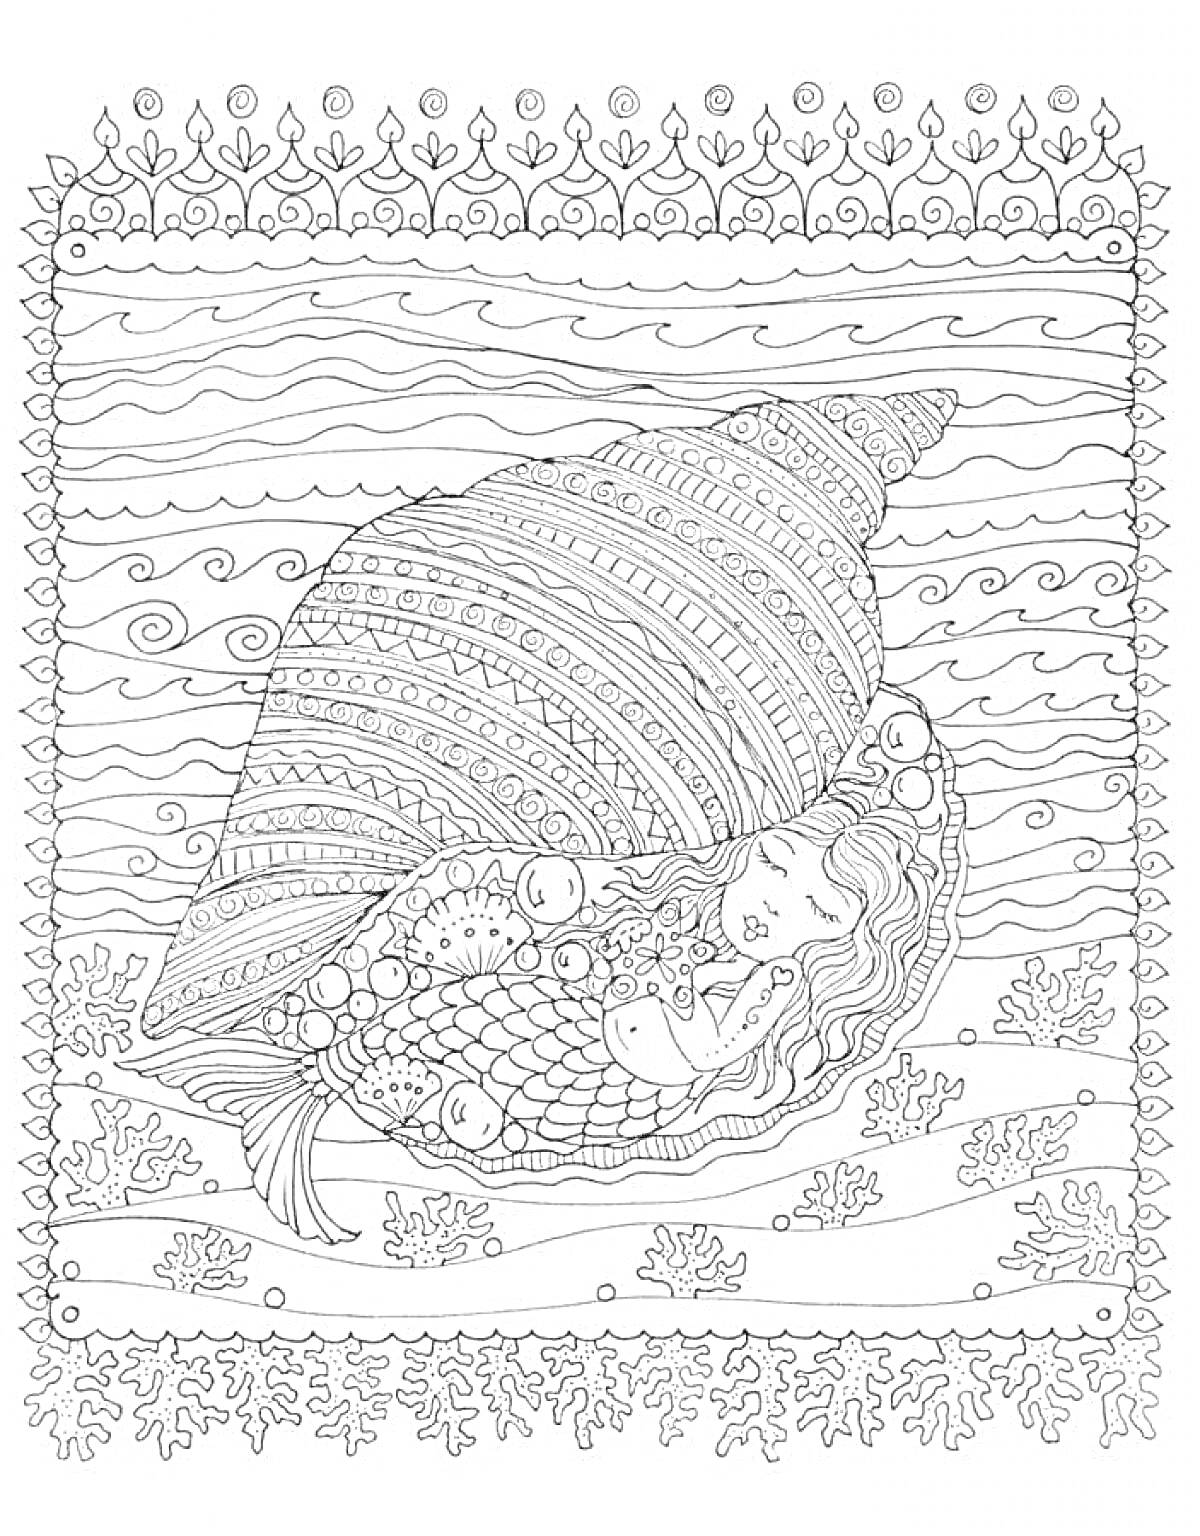 Раскраска Ракушка с русалкой, кораллы и узоры волн в подводном мире